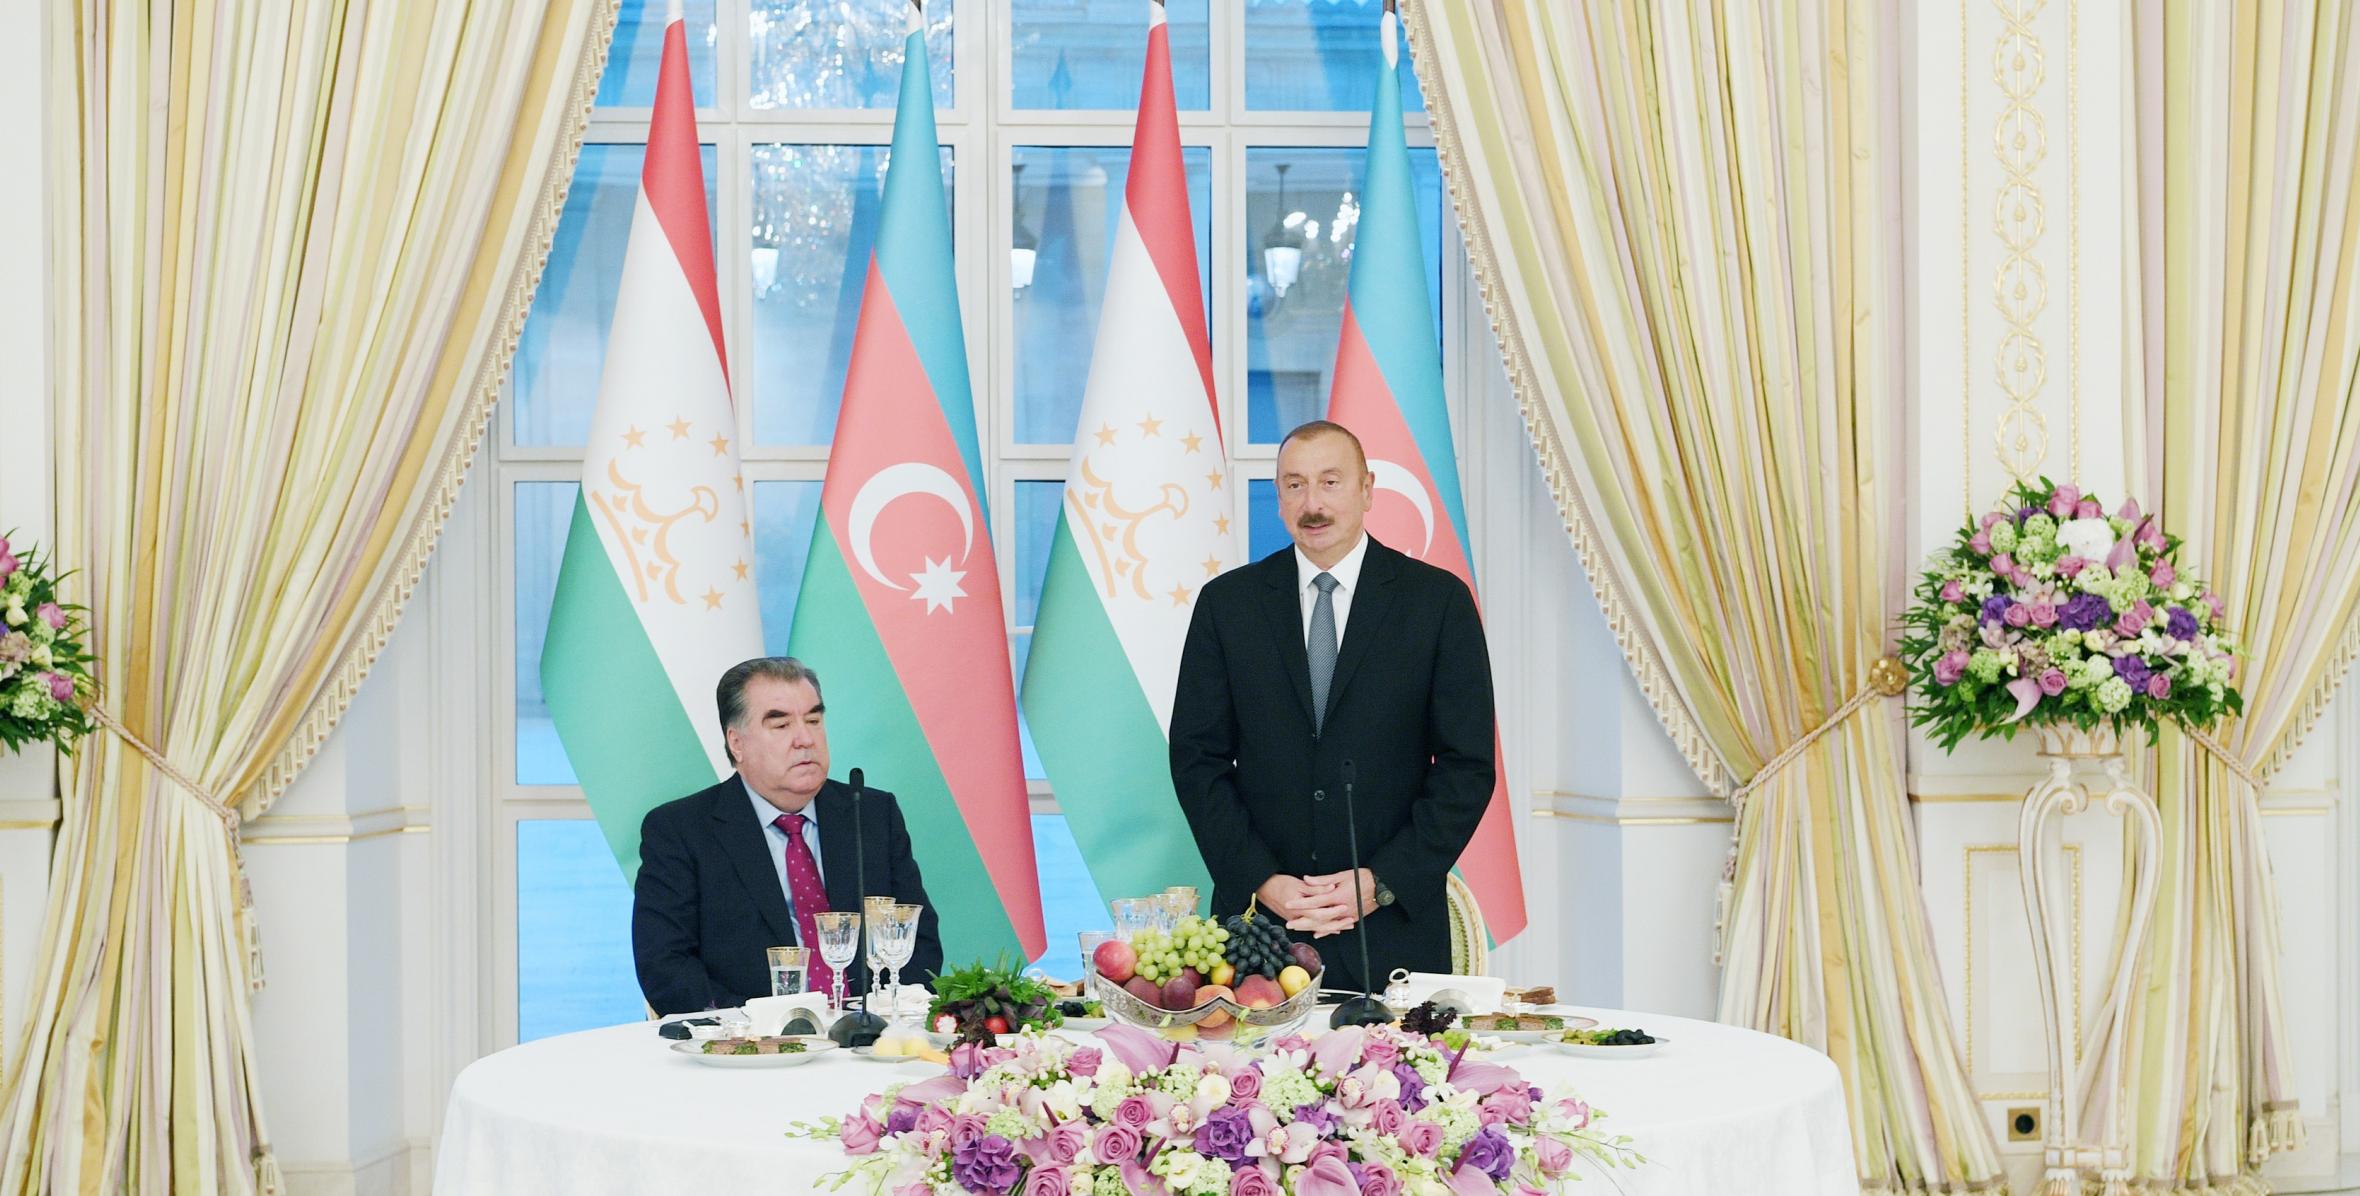 От имени Ильхама Алиева был дан официальный прием в честь Президента Республики Таджикистан Эмомали Рахмона.